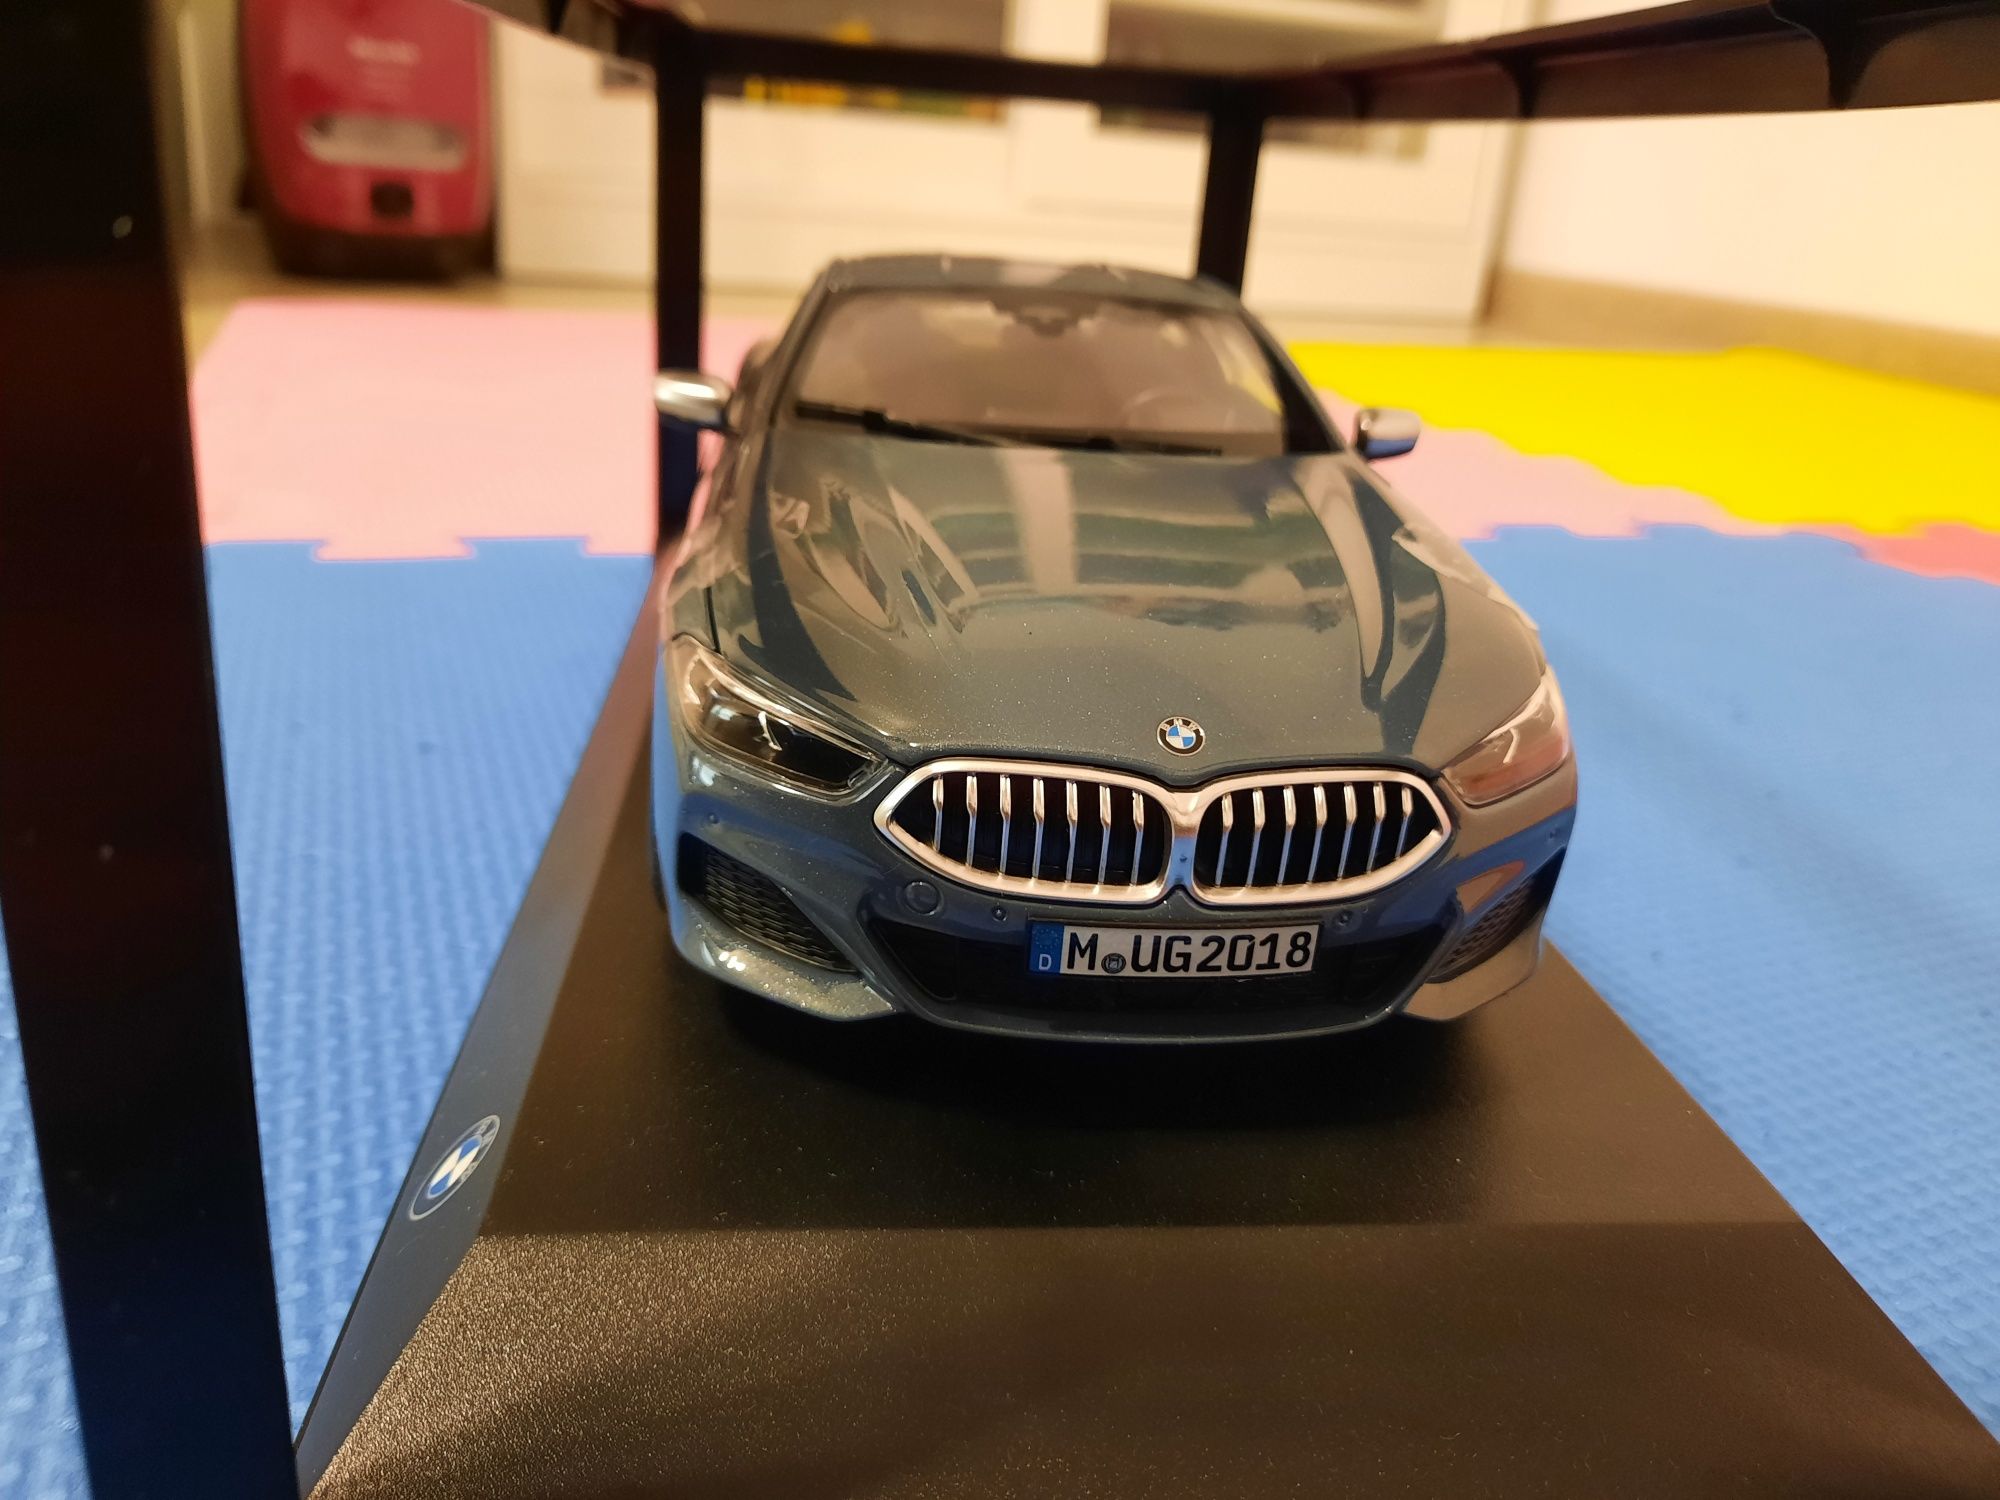 Macheta originala BMW seria 8  1:18